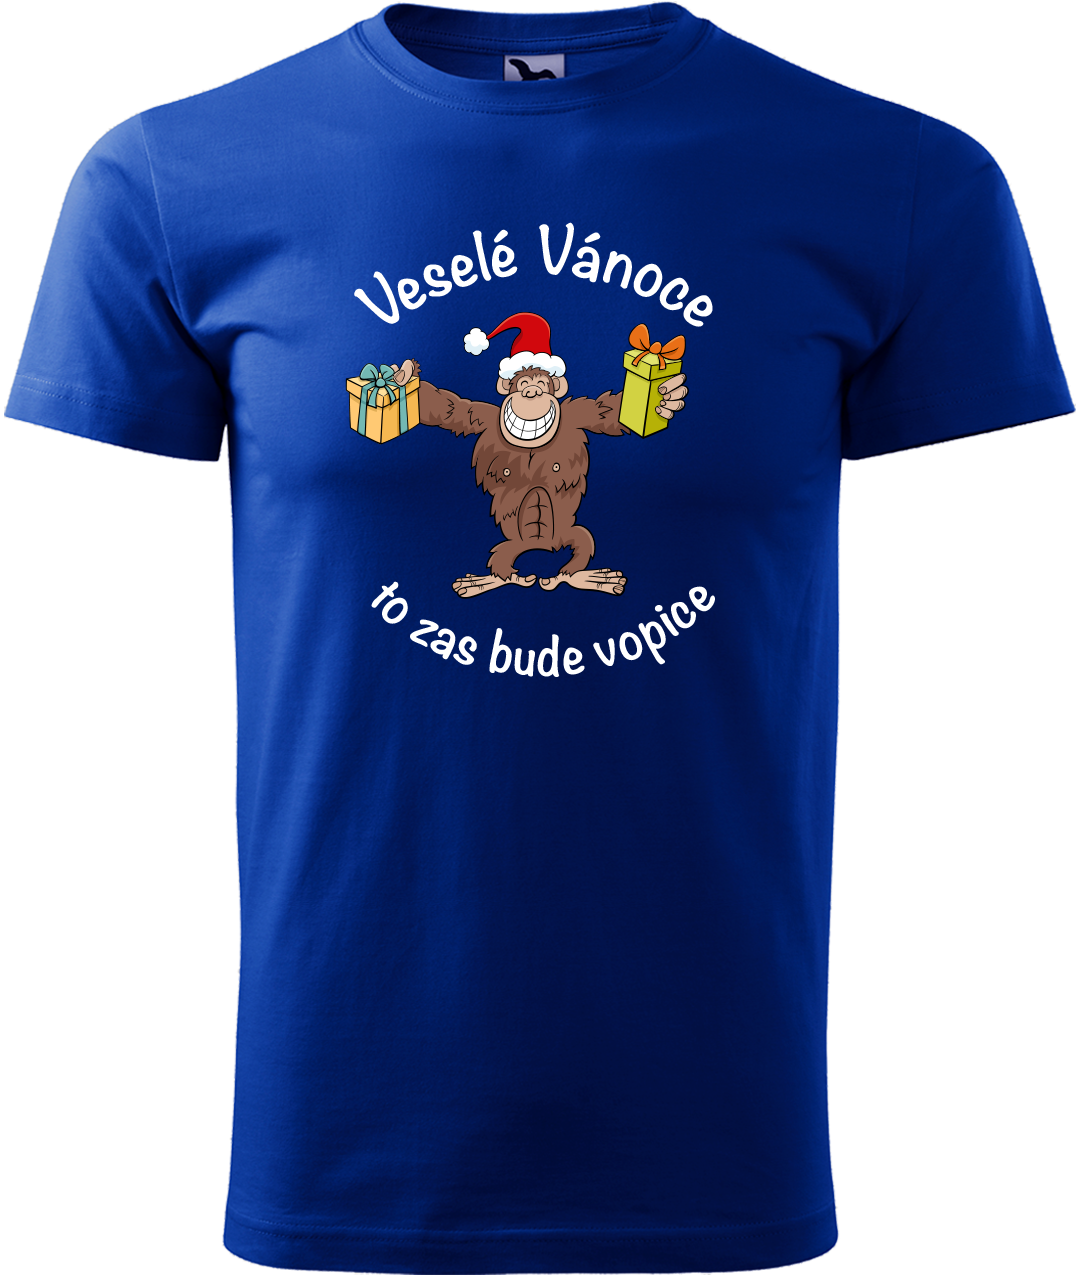 Pánské vánoční tričko - Veselé Vánoce to zas bude vopice (hnědý opičák) Velikost: XL, Barva: Královská modrá (05)